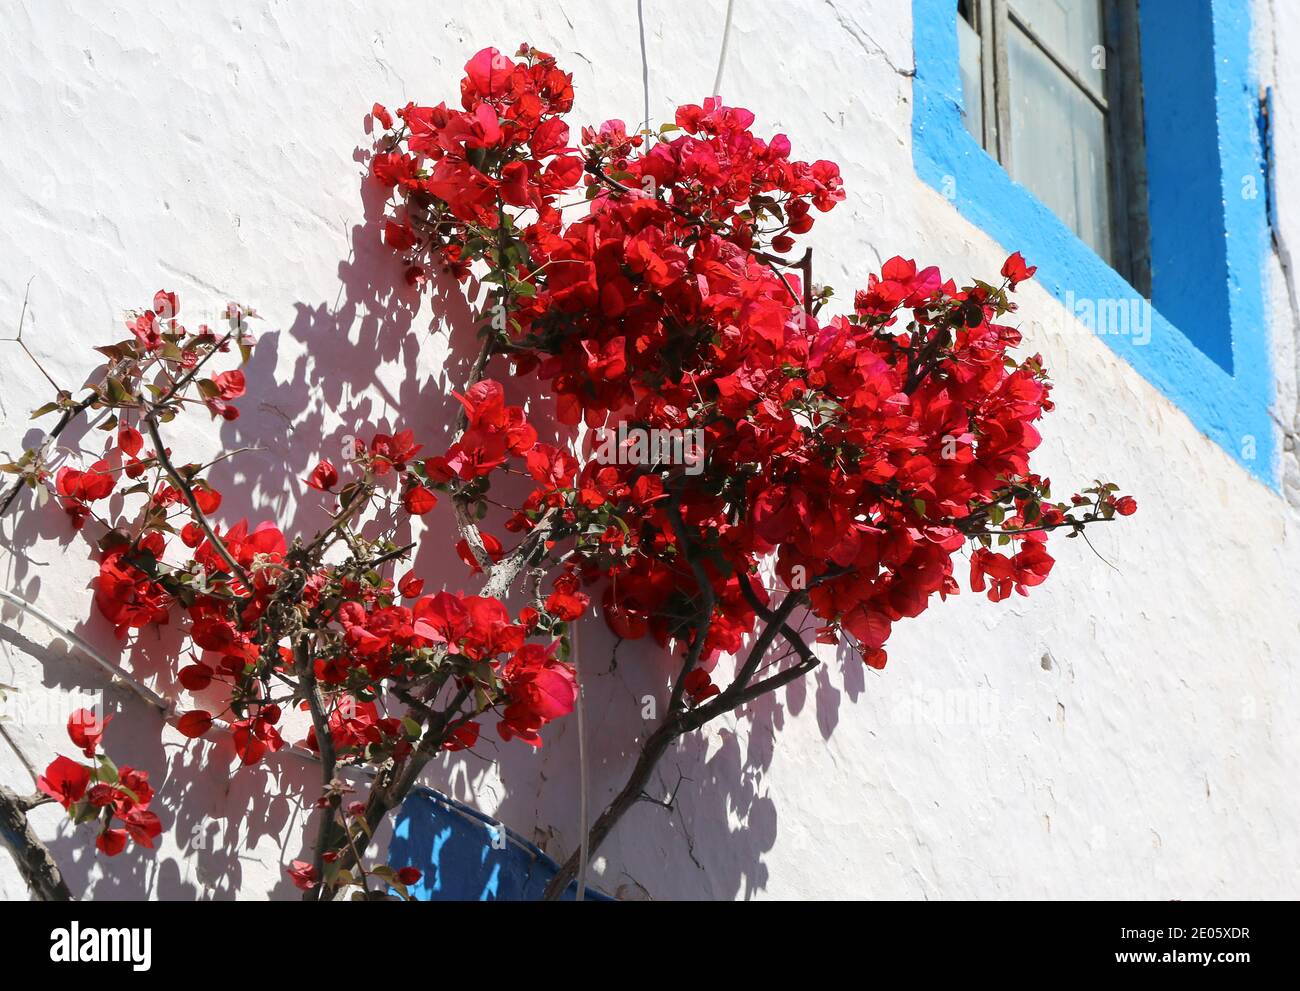 Hoa Giấy Đỏ (Red Bougainvillea flowers): Hãy ngắm nhìn những bông hoa giấy đỏ rực rỡ làm say đắm lòng người với sự nóng bỏng và năng động. Loài hoa giấy này không chỉ là một điểm nhấn nổi bật trong không gian của bạn mà còn mang đến cảm giác vui tươi và nhiệt huyết.